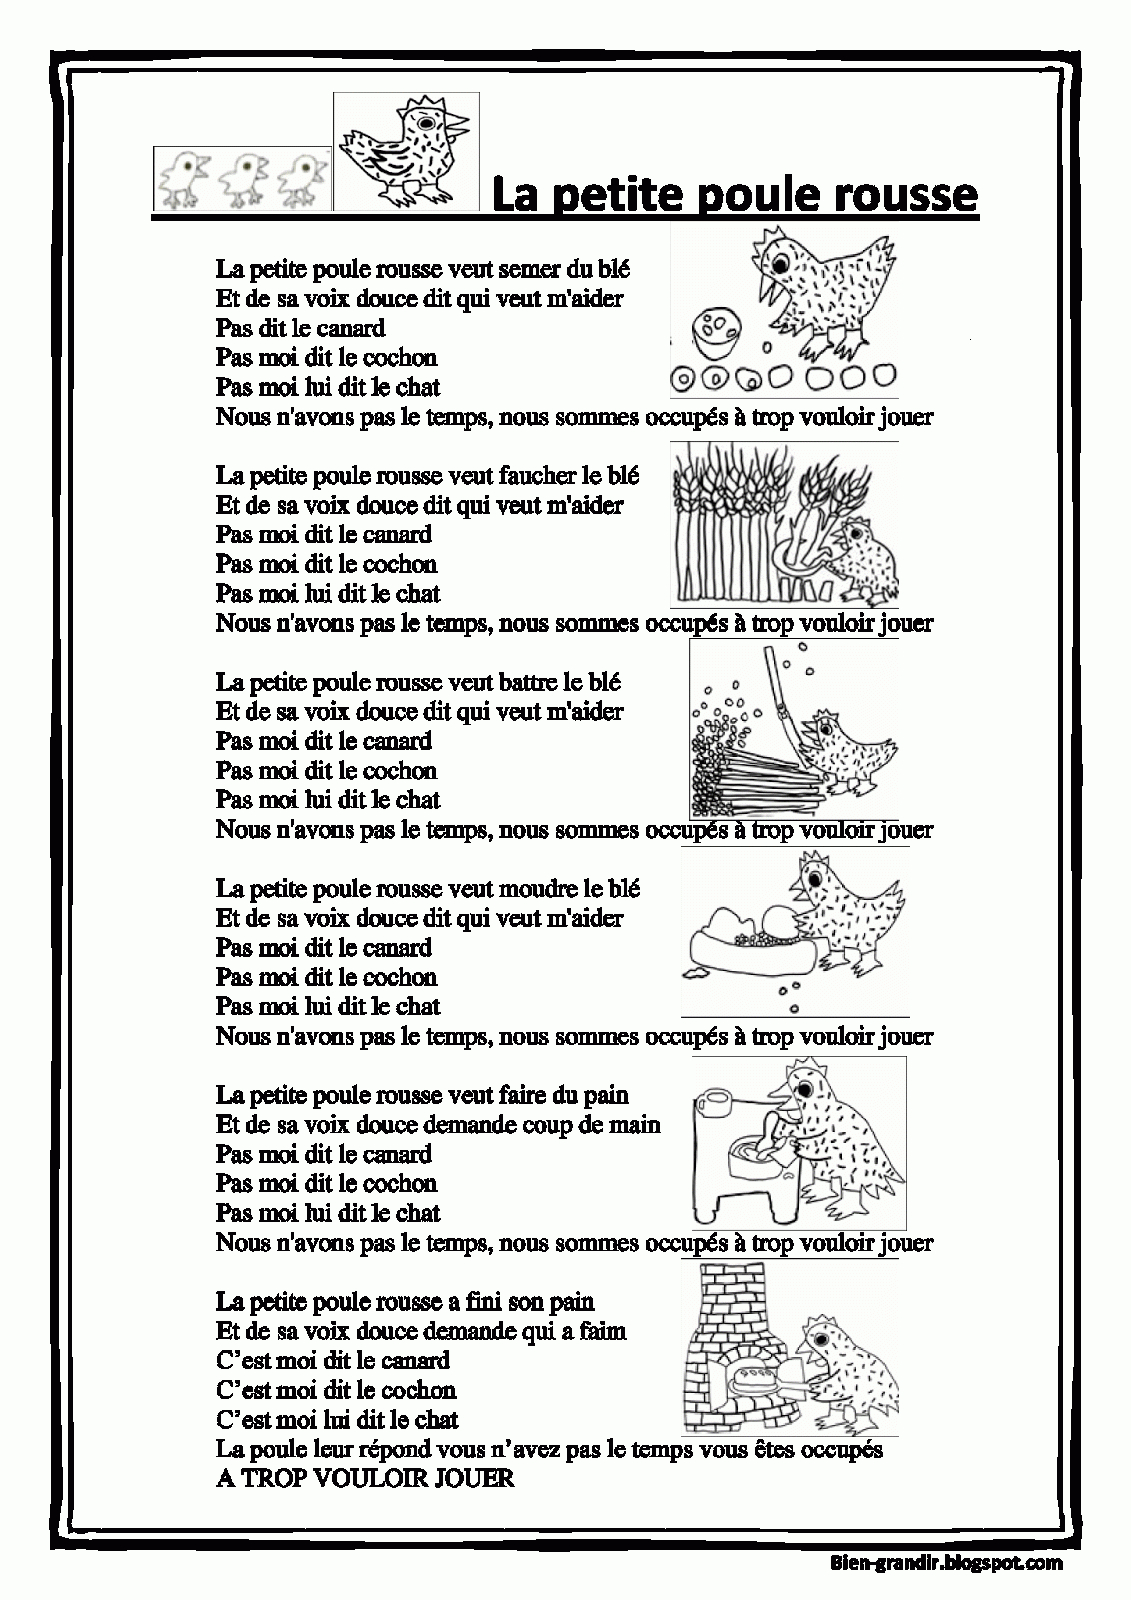 Paroles+De+La+Chanson+De+La+Petite+Poule+Rousse.gif (1131 concernant Chanson De La Petite Patate